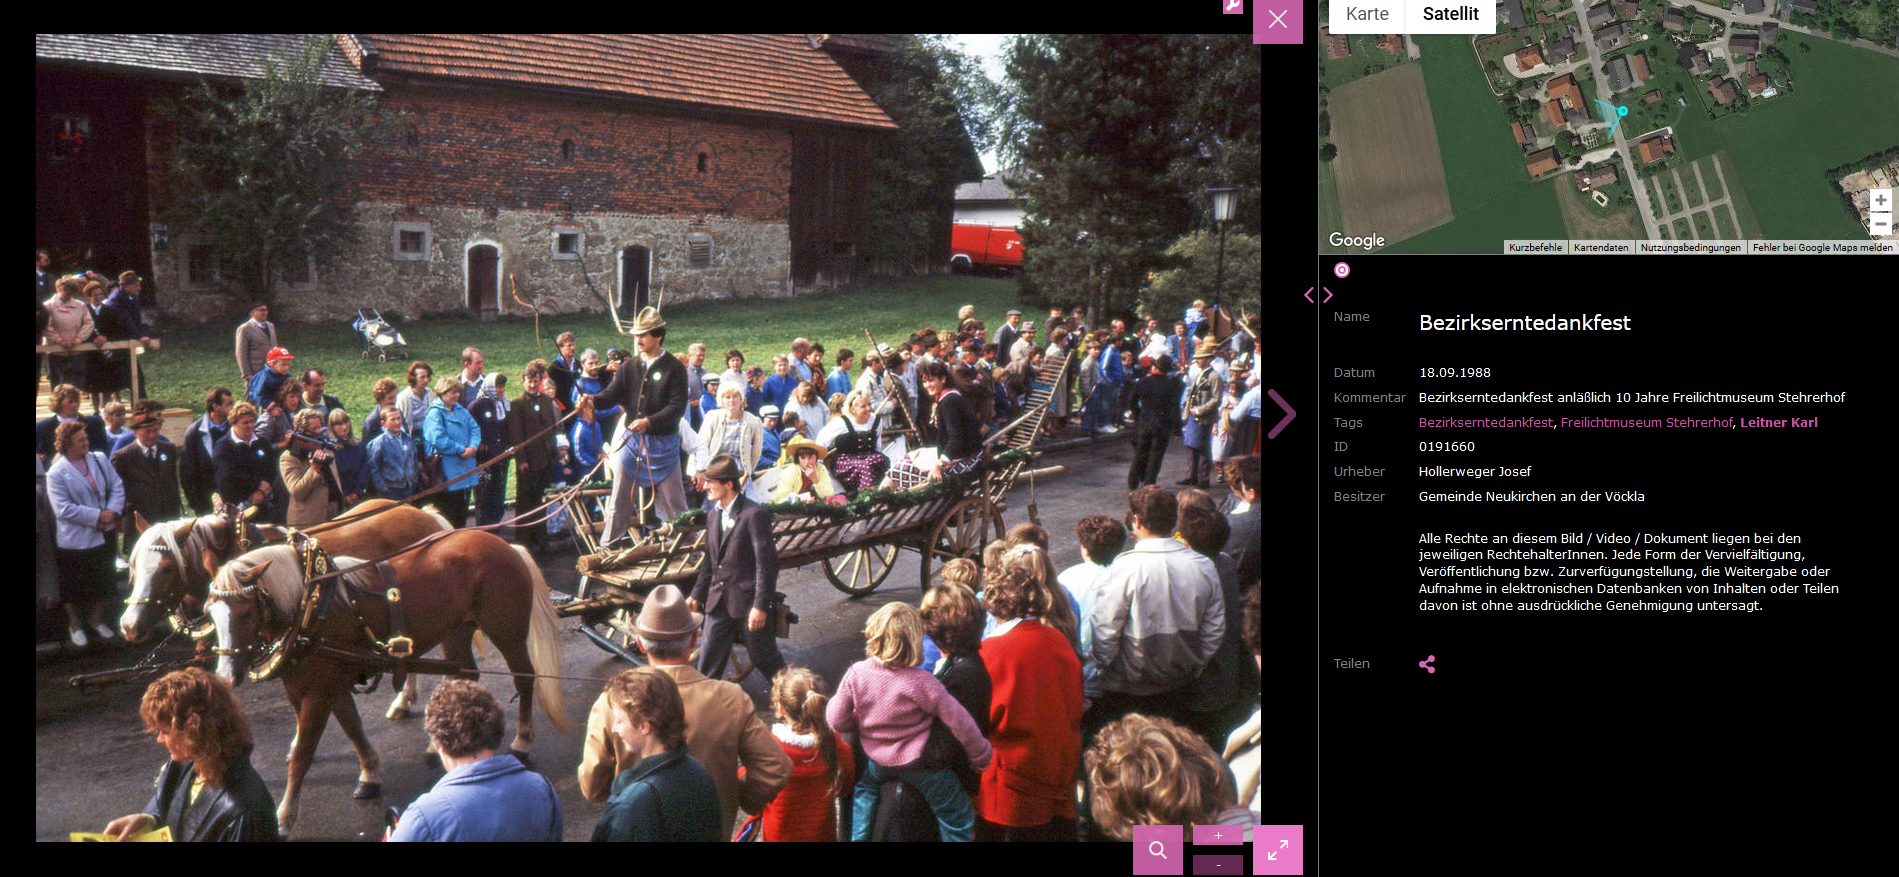 Bezirkserntedankfest-1988-01